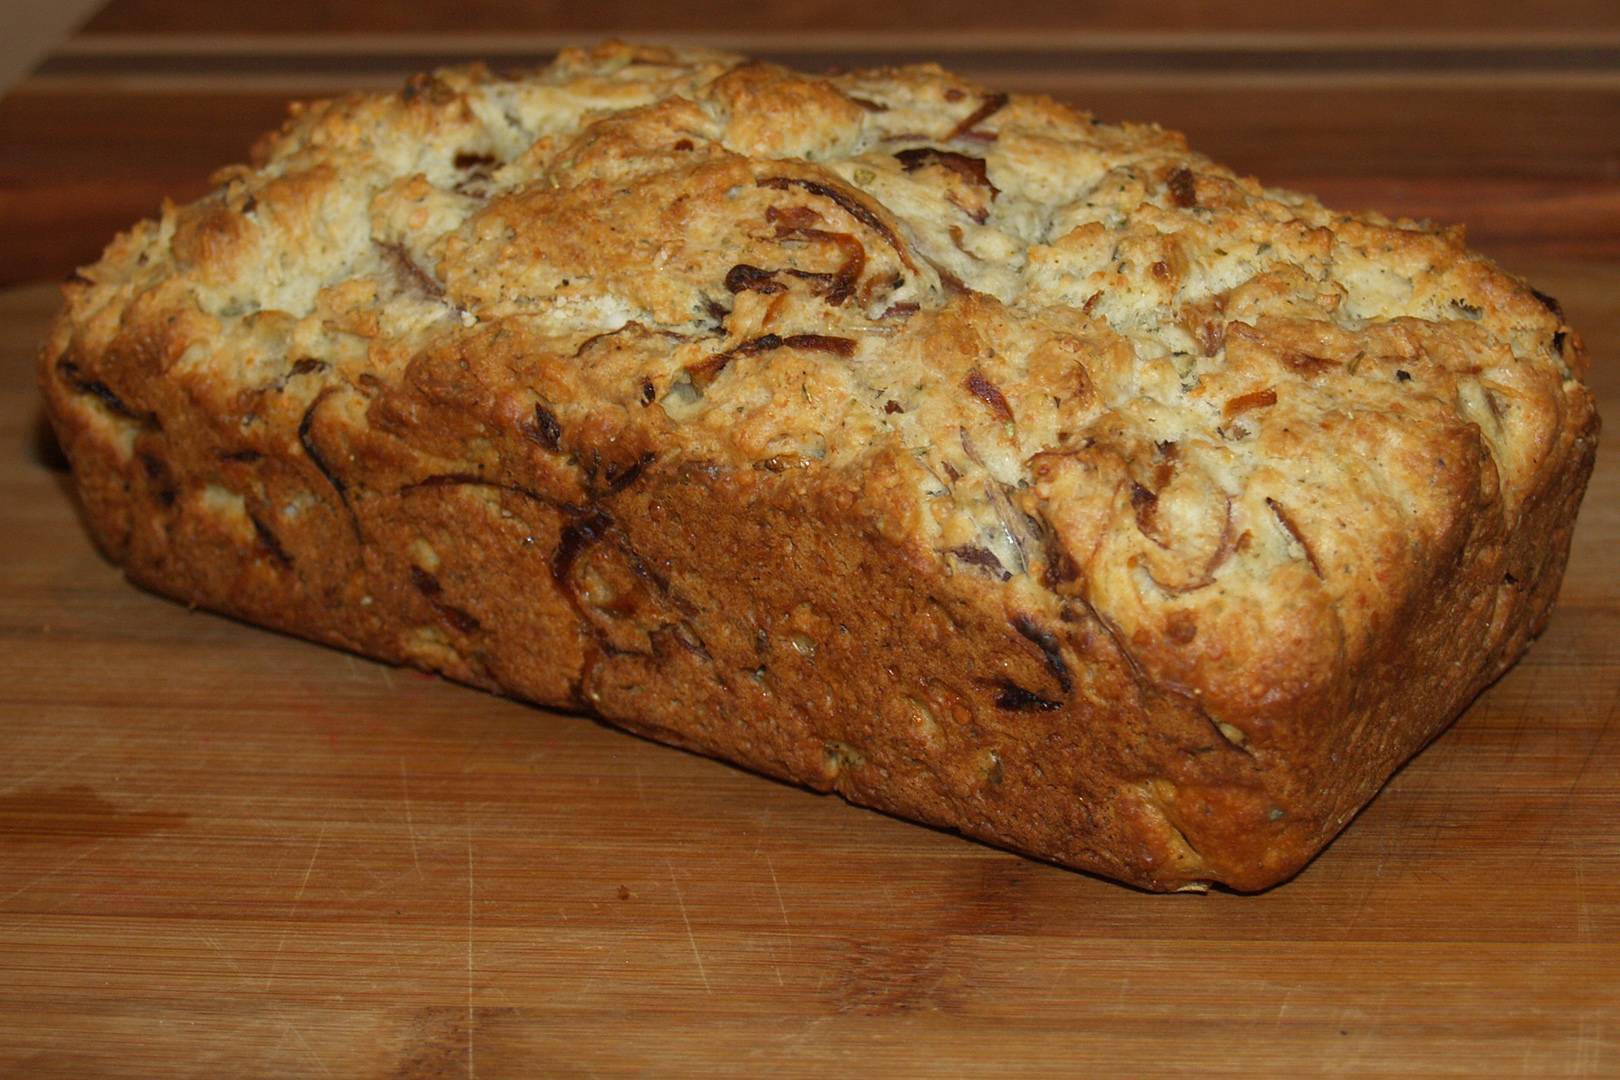 Sajtos-hagymás kenyér egyszerűen: ilyen finomat még nem ettél